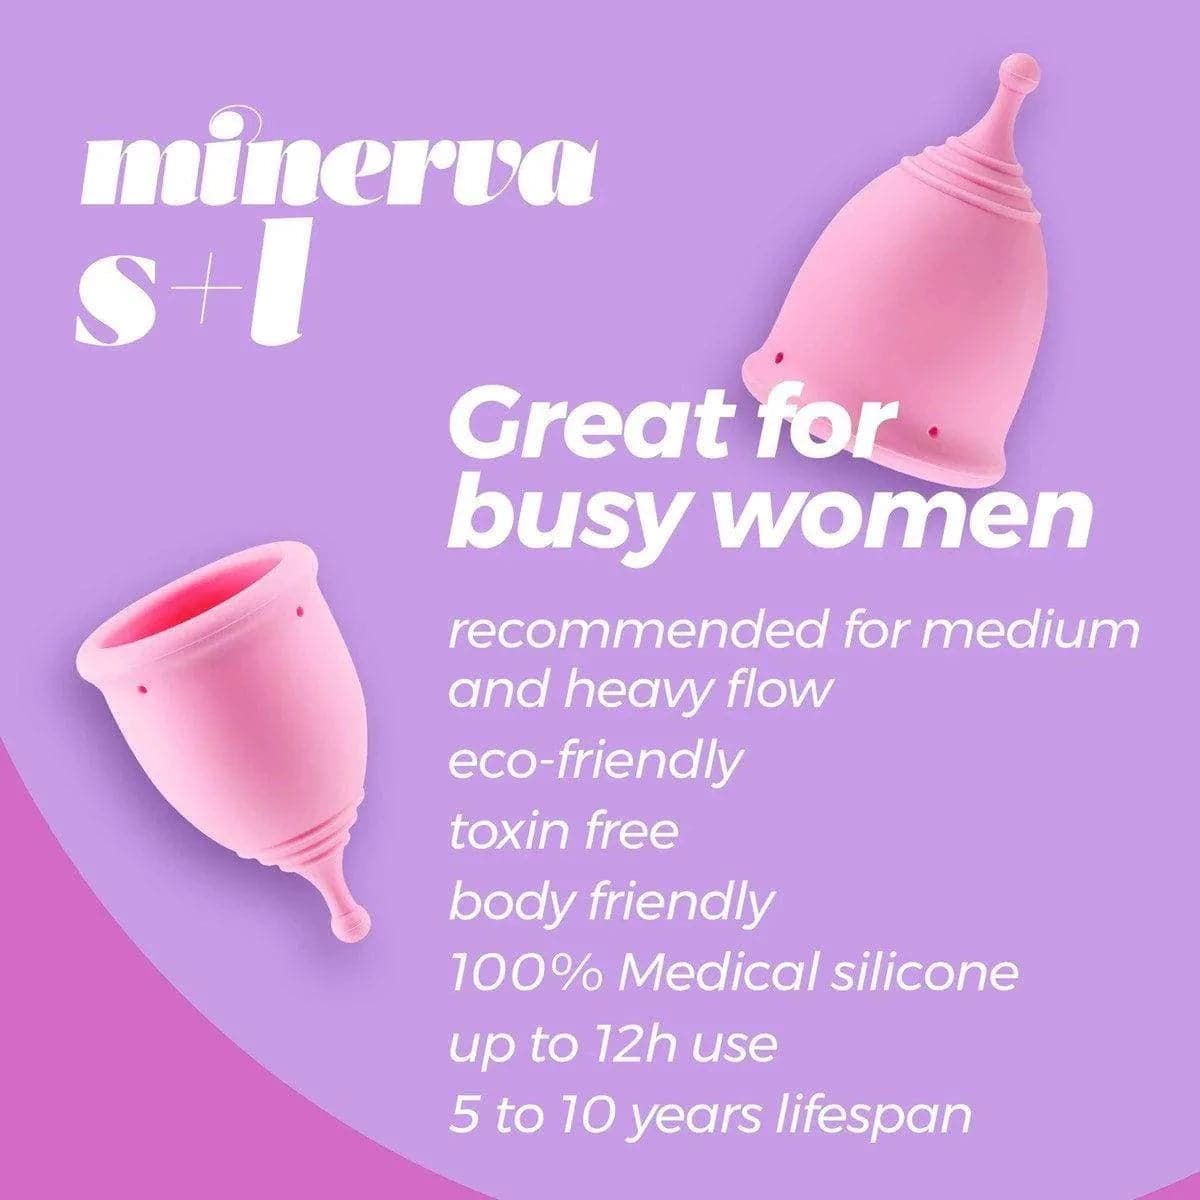 Copo Menstrual Minerva S + L 100% Silicone, 2un 23-30ml, 6.9cm Ø4.7cm  Crushious   